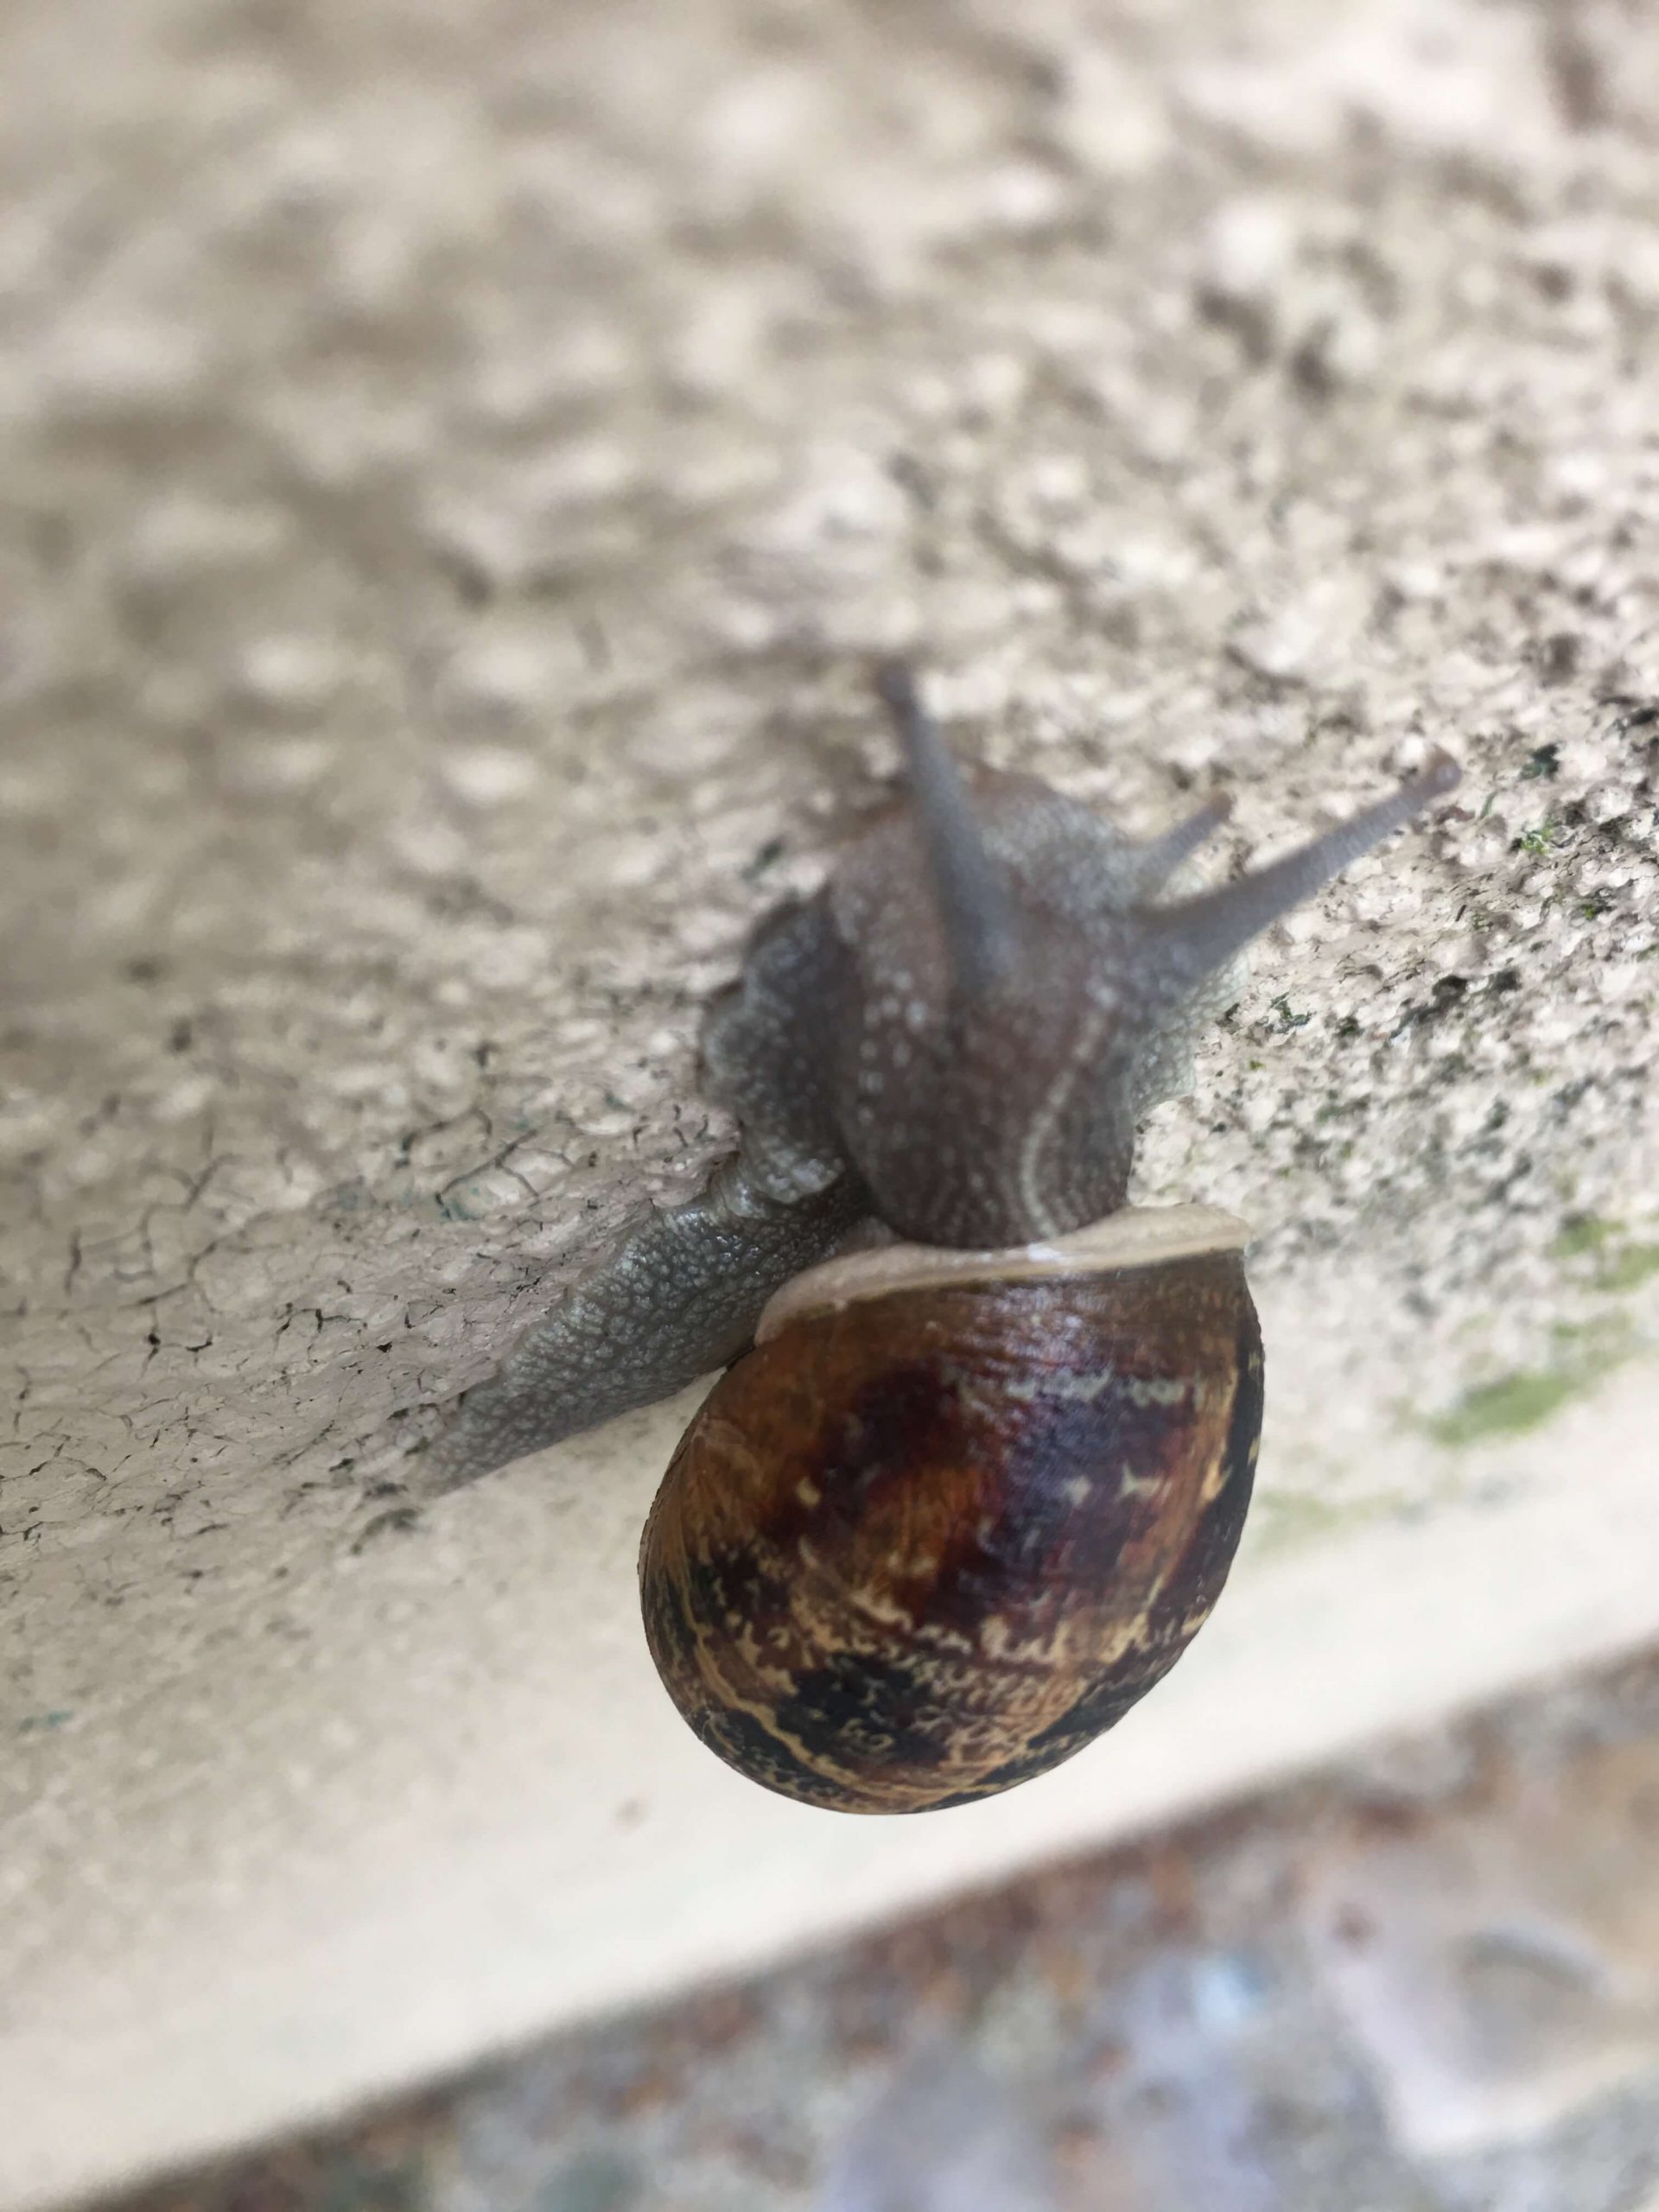 A snail creeps up a wall